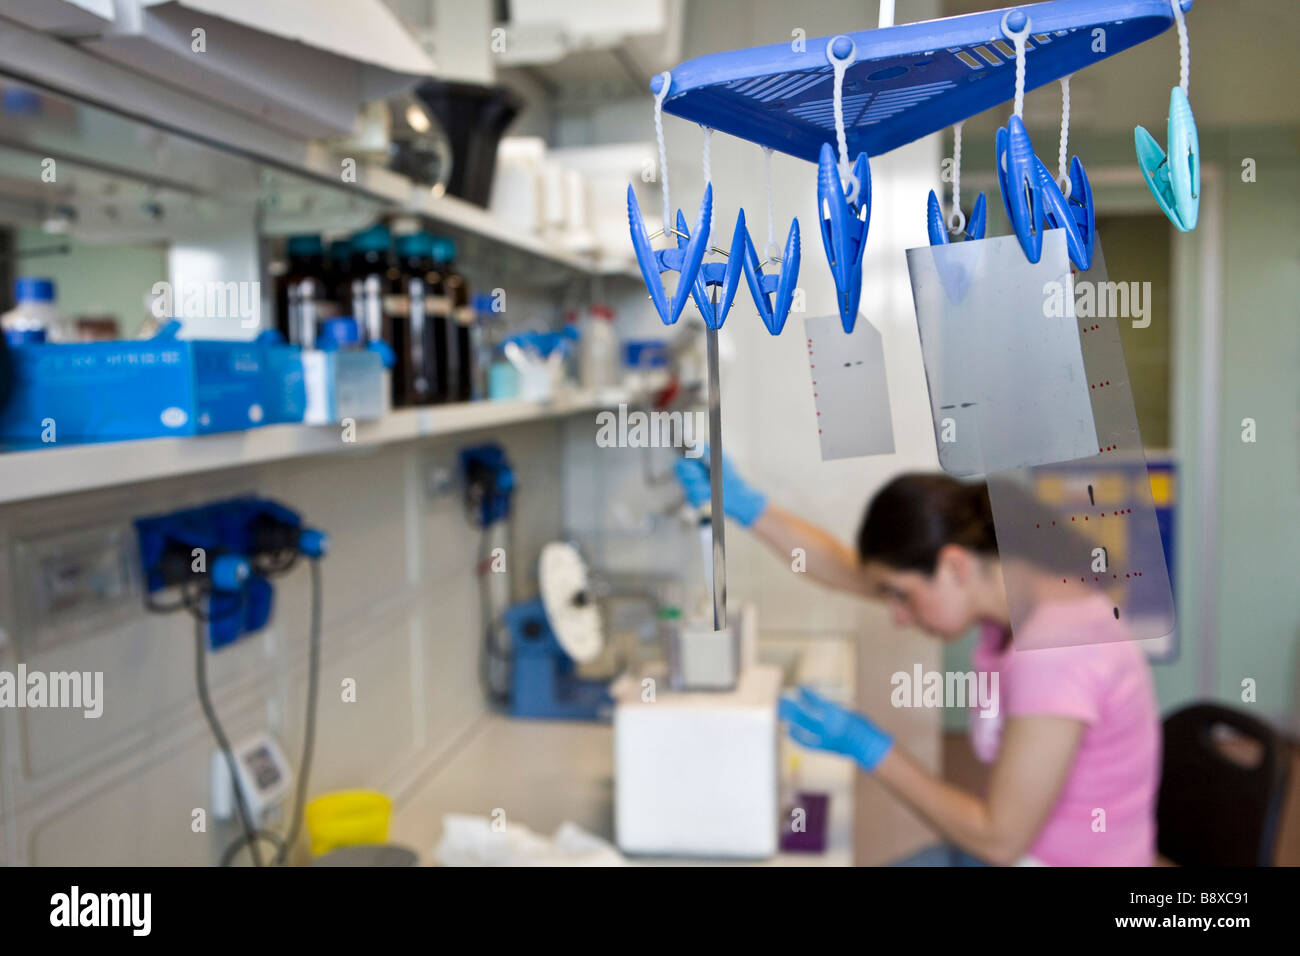 proteins purification procedure, istituto di ricerche farmacologiche mario negri, milan, italy Stock Photo